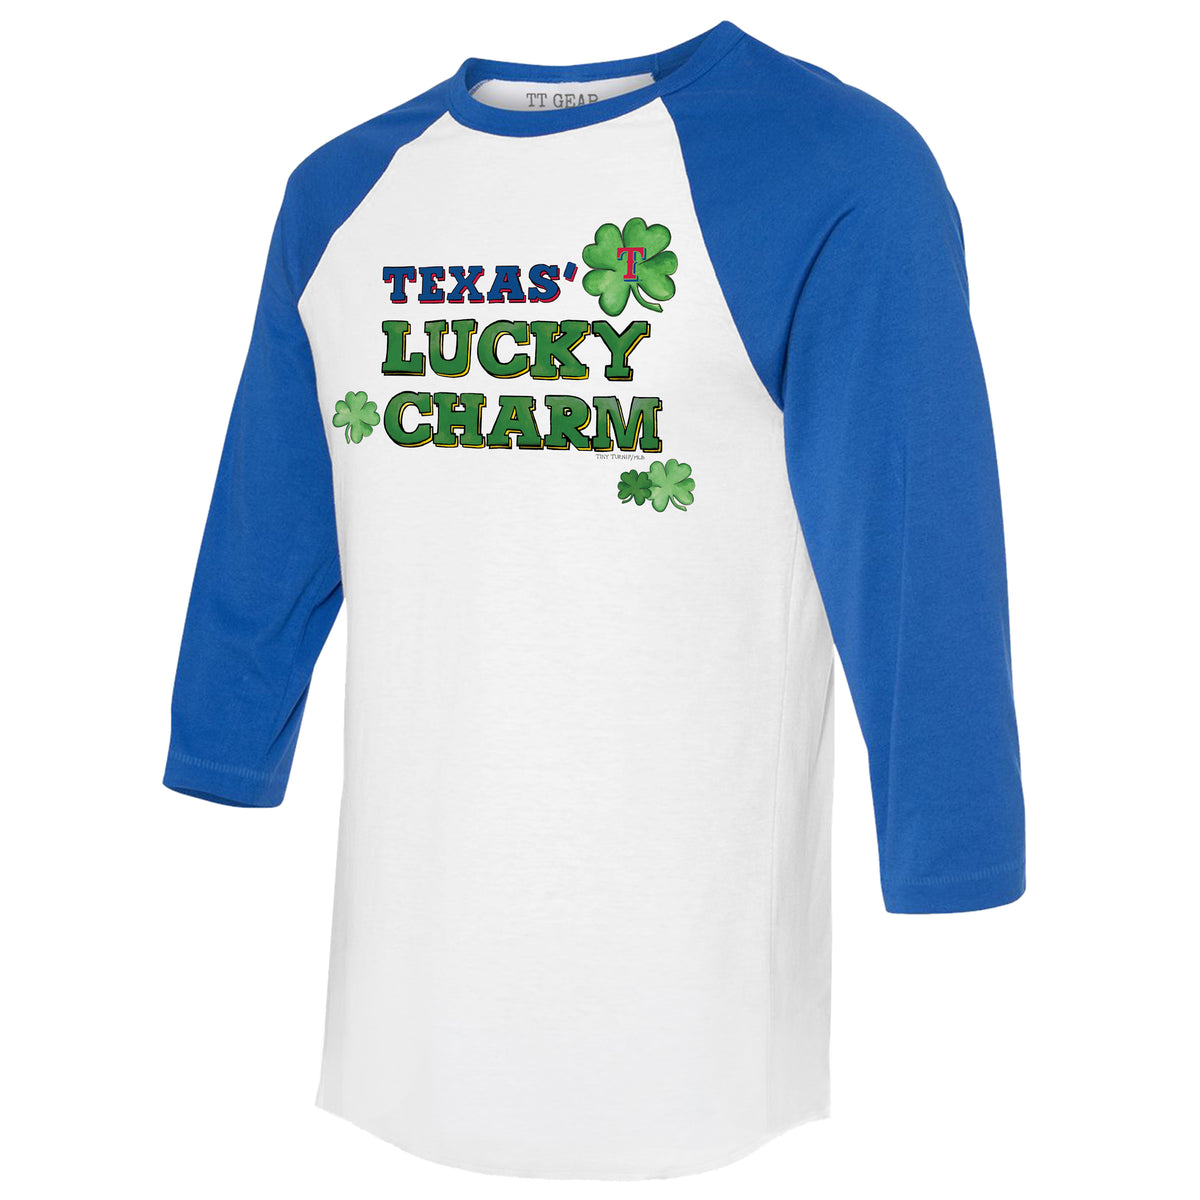 Texas Rangers Lucky Charm 3/4 Royal Blue Sleeve Raglan